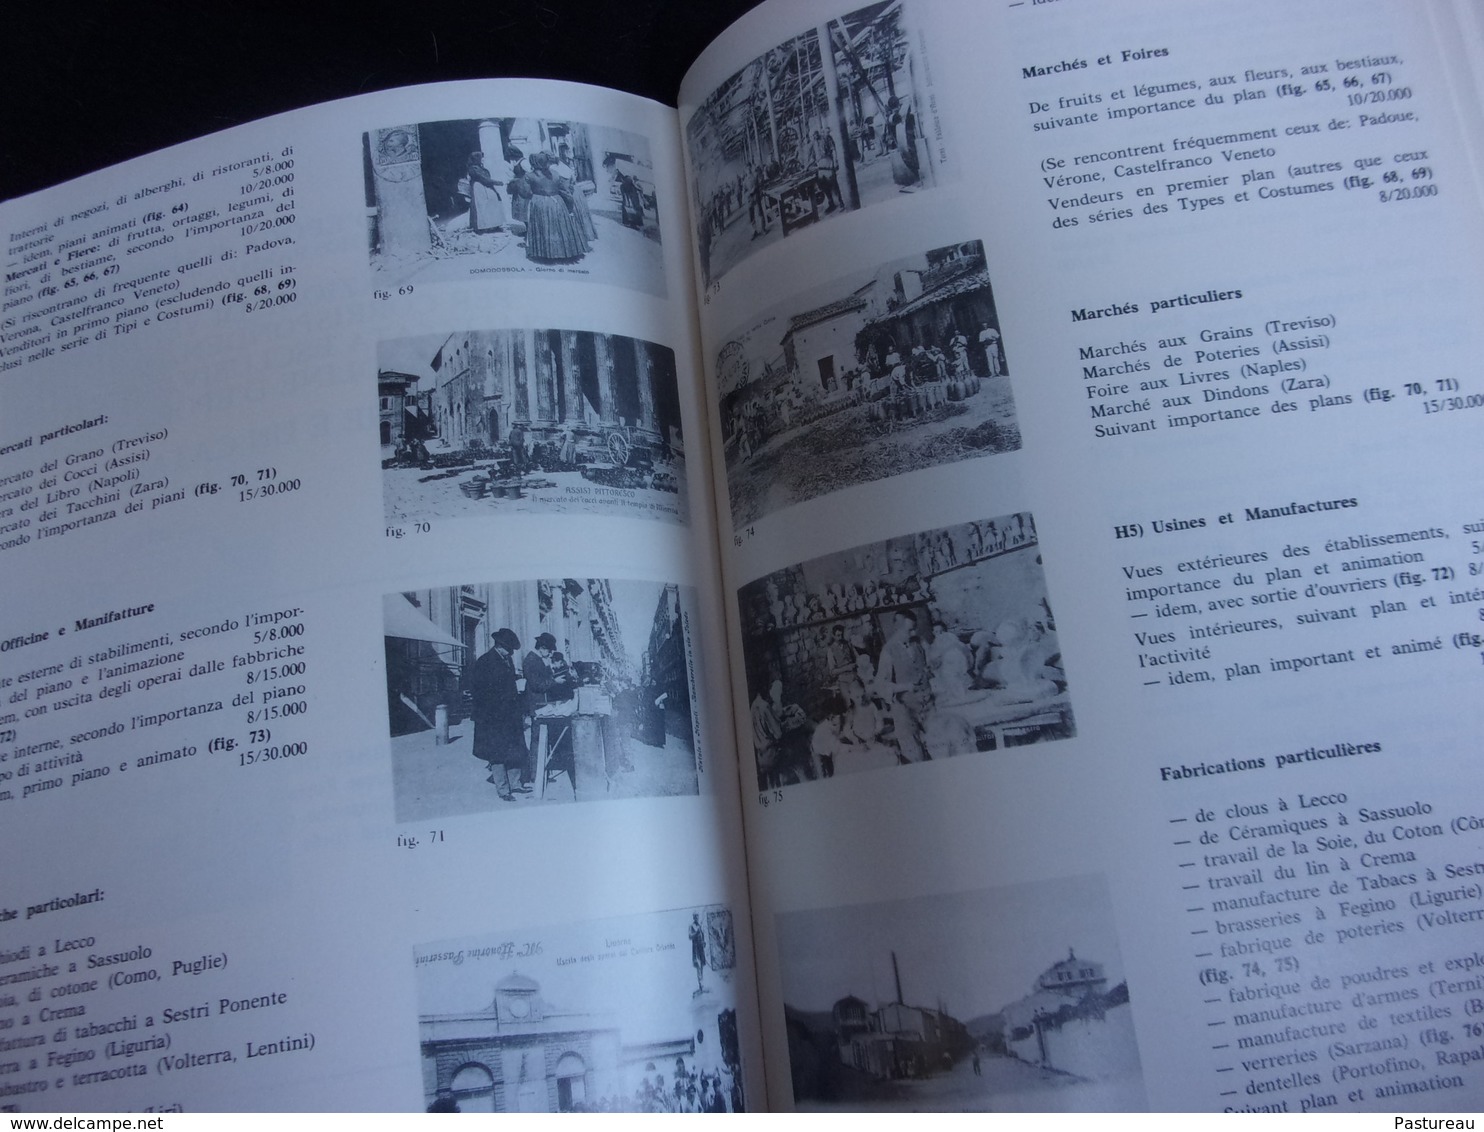 Italie . Cartoline ...Catalogue Mordente 1982. En Français et Italien . 335  pages . Nombreuses Illustrations .7 scans.